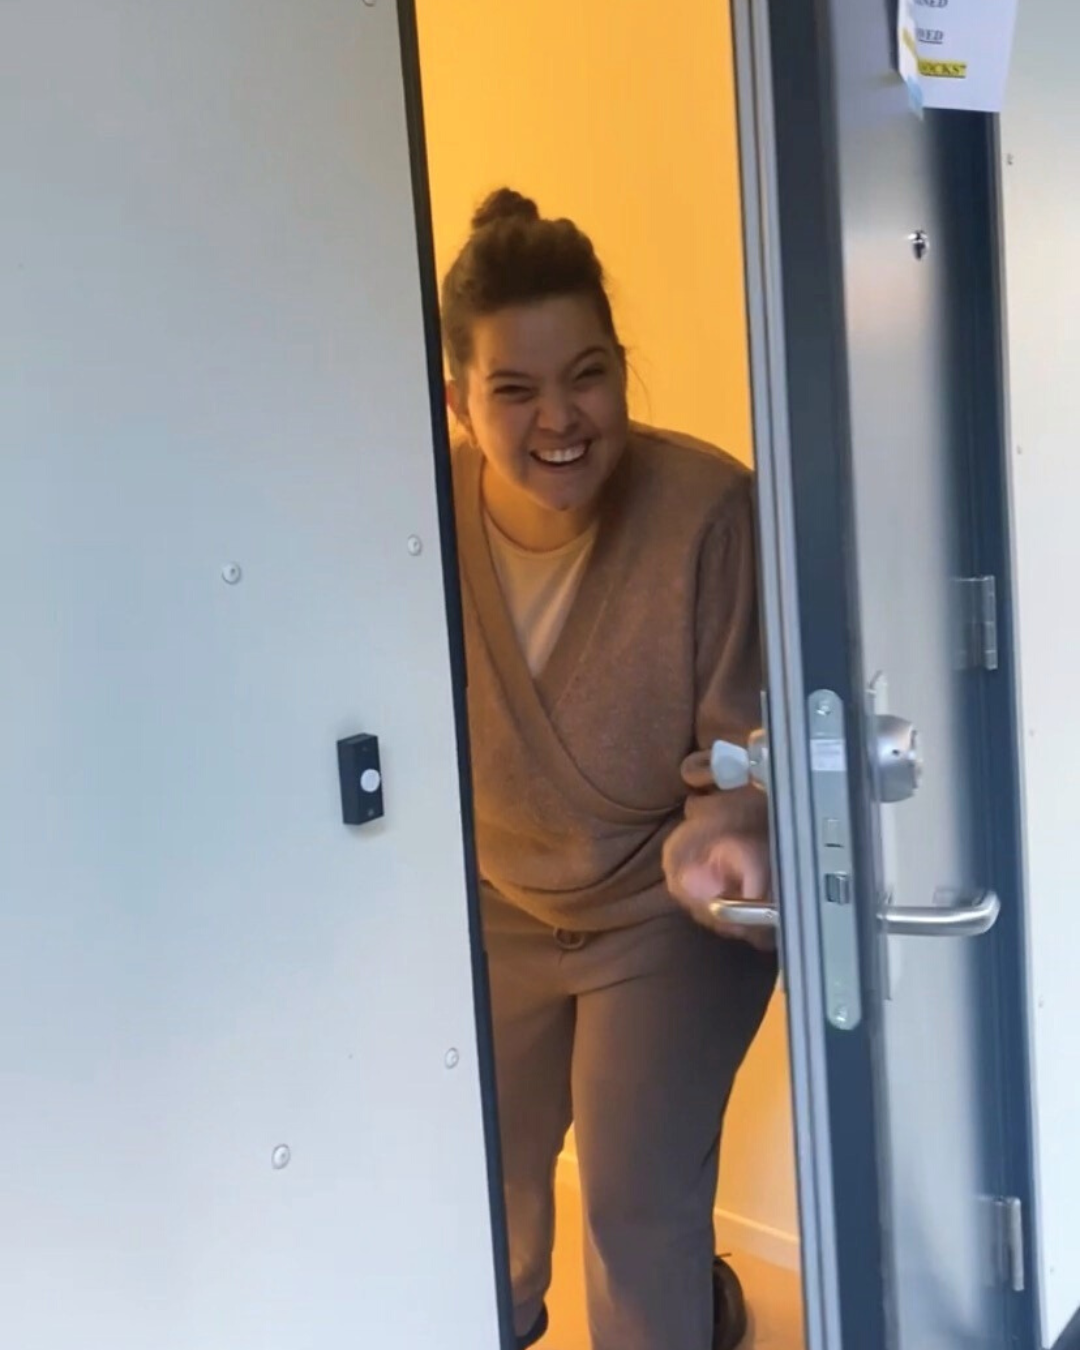 Tamarin, en ung kvinne, åpner står i inngangdøren til leiligheten sin. Hun smiler stort. Hun har bå mørk beige bukse og beige genser. Hun har brunt hår satt opp.